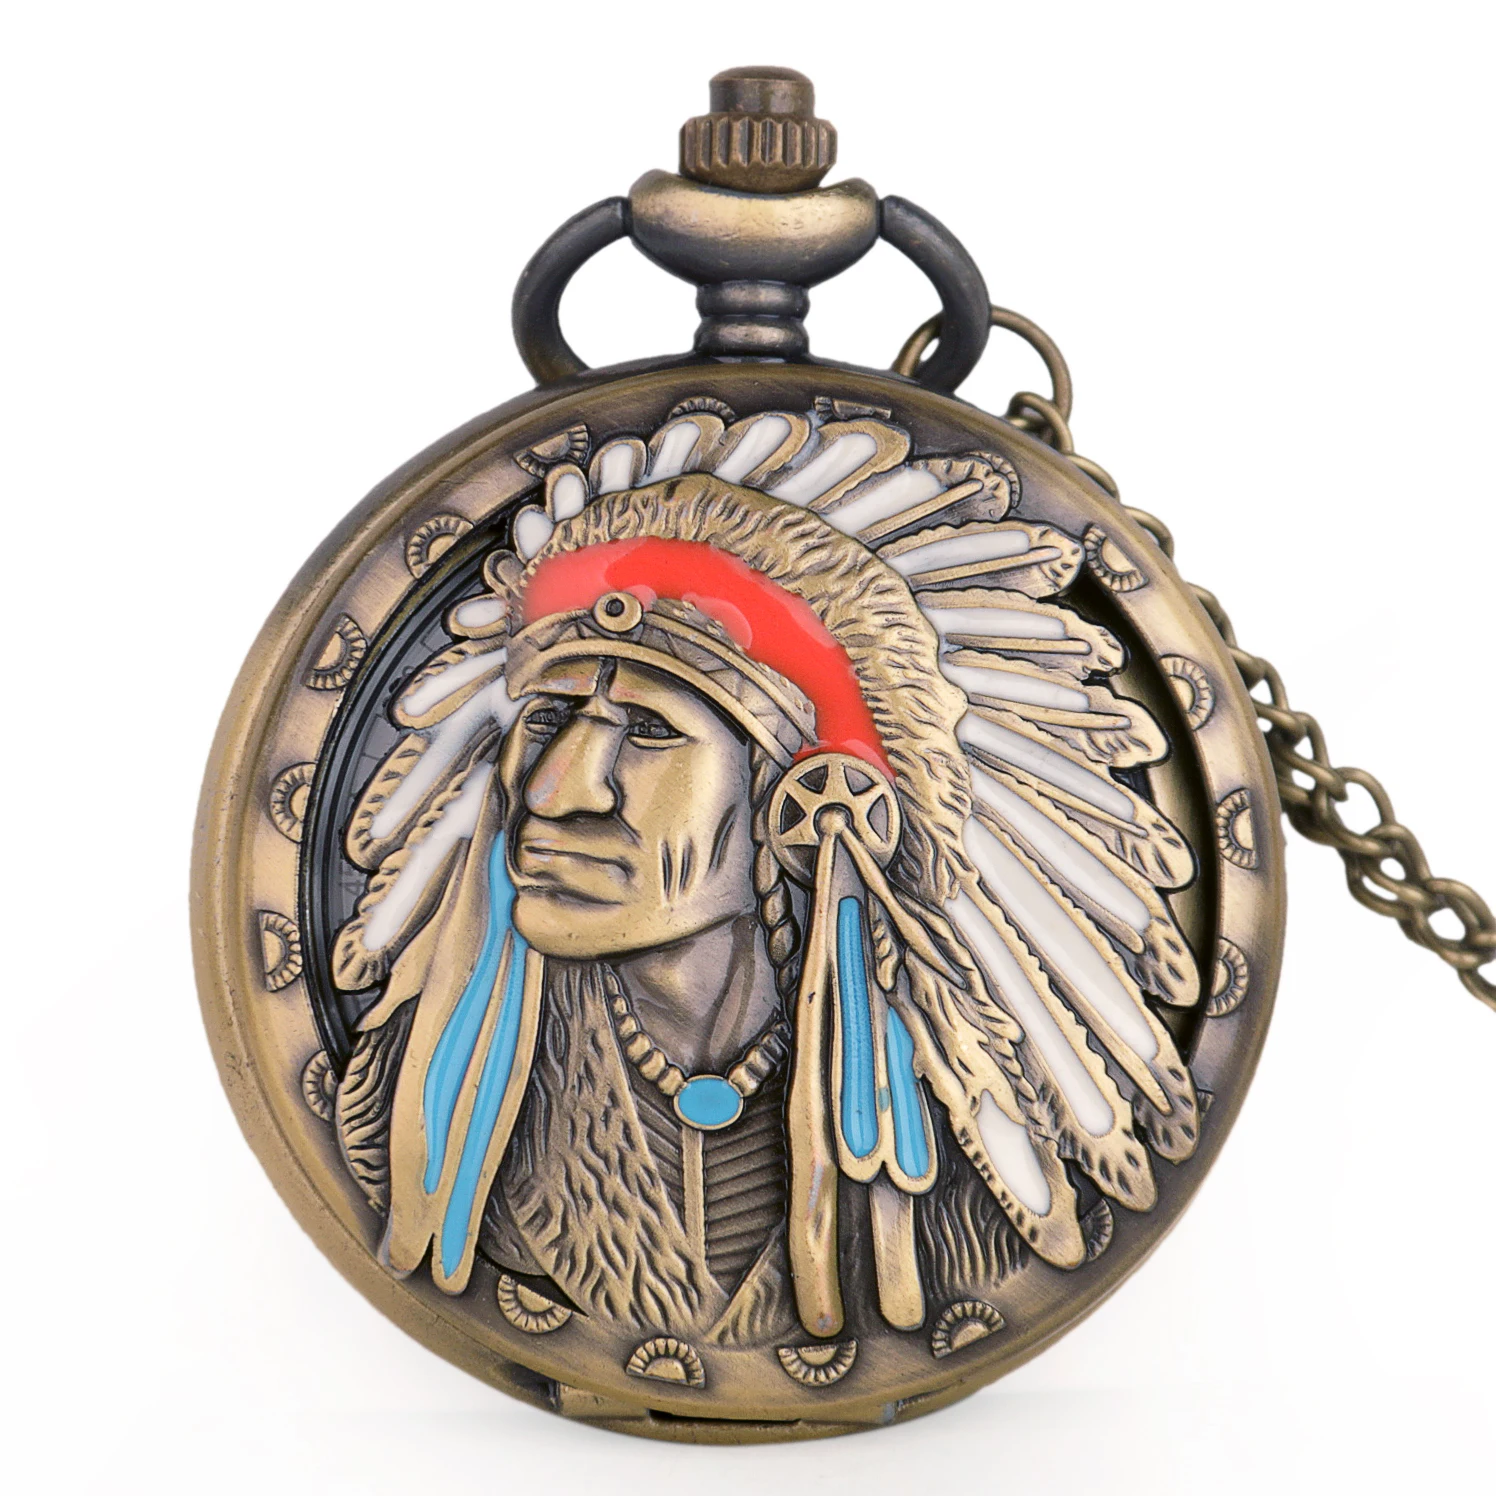 

New Style Ancient Indian Old Man Colorful Portrait Design Quartz Fob Pocket Watch Bronze Pendant Necklace Chain Souvenir Gifts